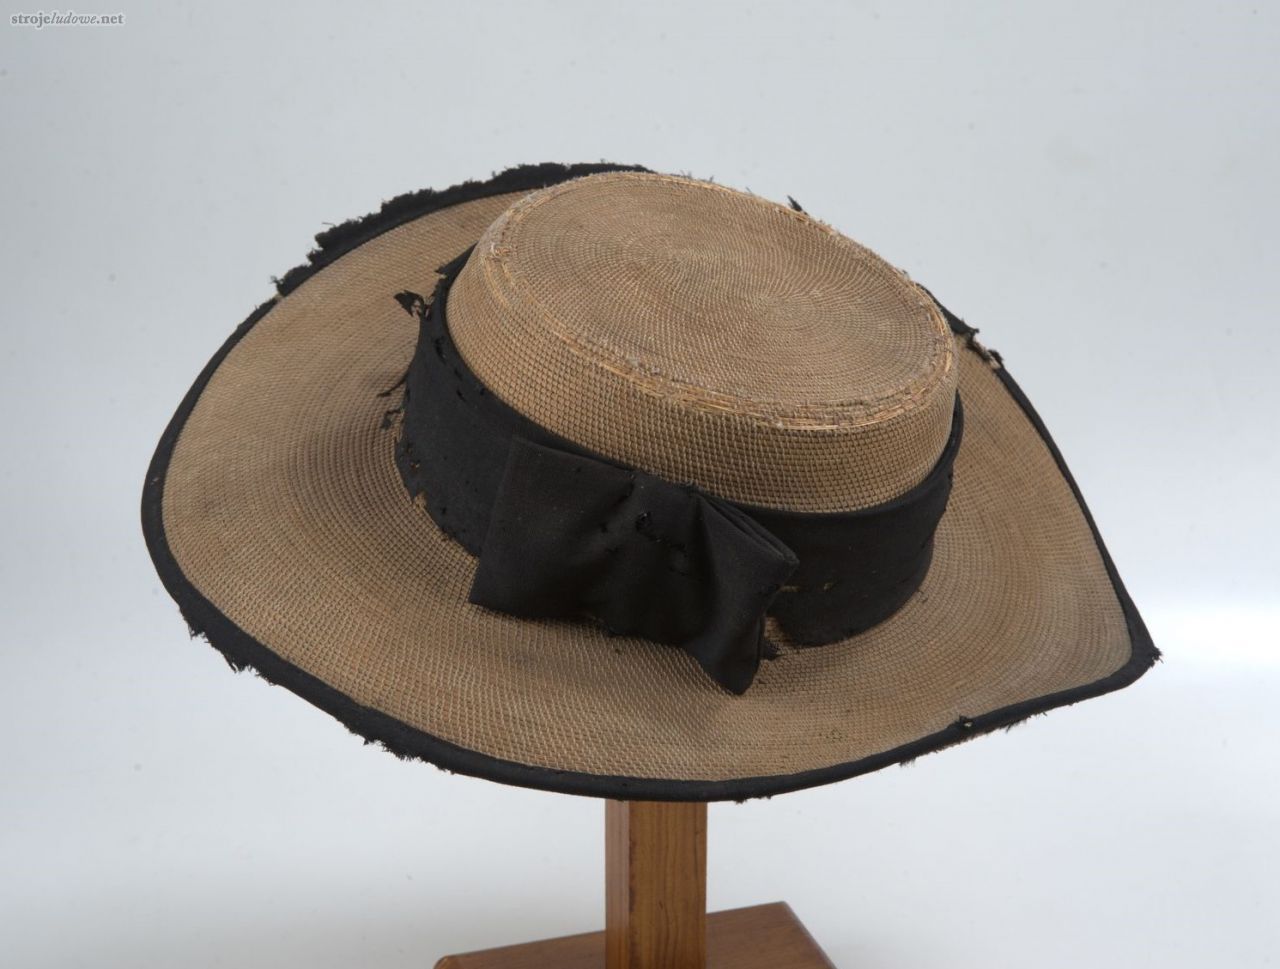 Kapelusz słomiany, ze zbiorów Muzeum Narodowego w Lublinie, fot. z katalogu naukowego

Słomiane kapelusze noszono głównie latem. Miały duże rondo, często obszyte ciemną wstążką, którą opasywano także główkę. 